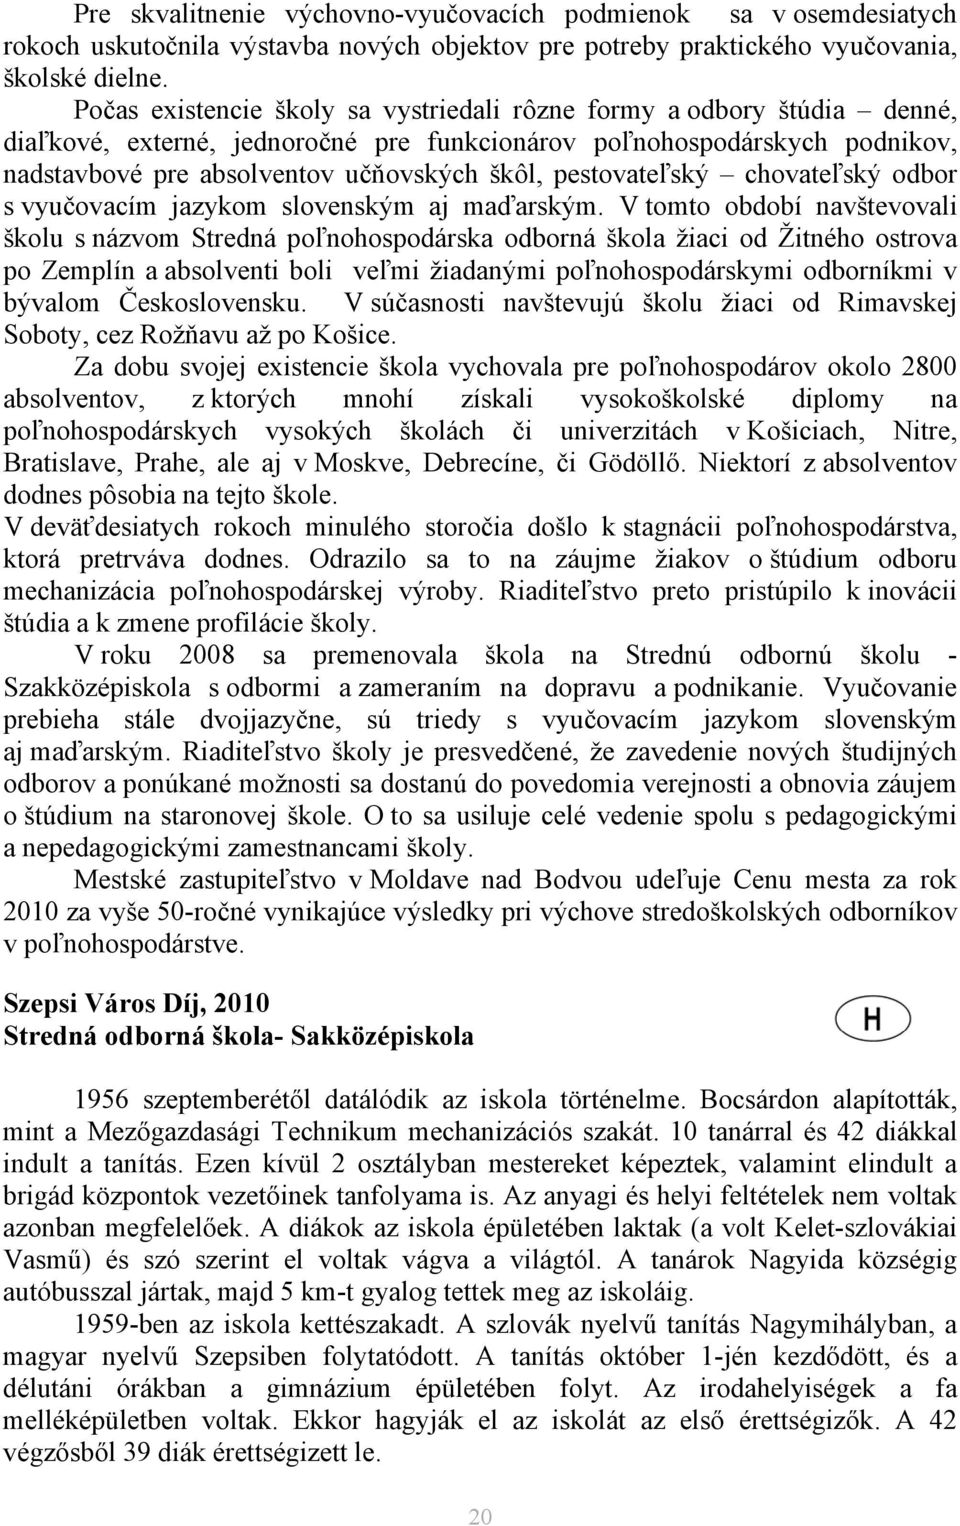 pestovateľský chovateľský odbor s vyučovacím jazykom slovenským aj maďarským.